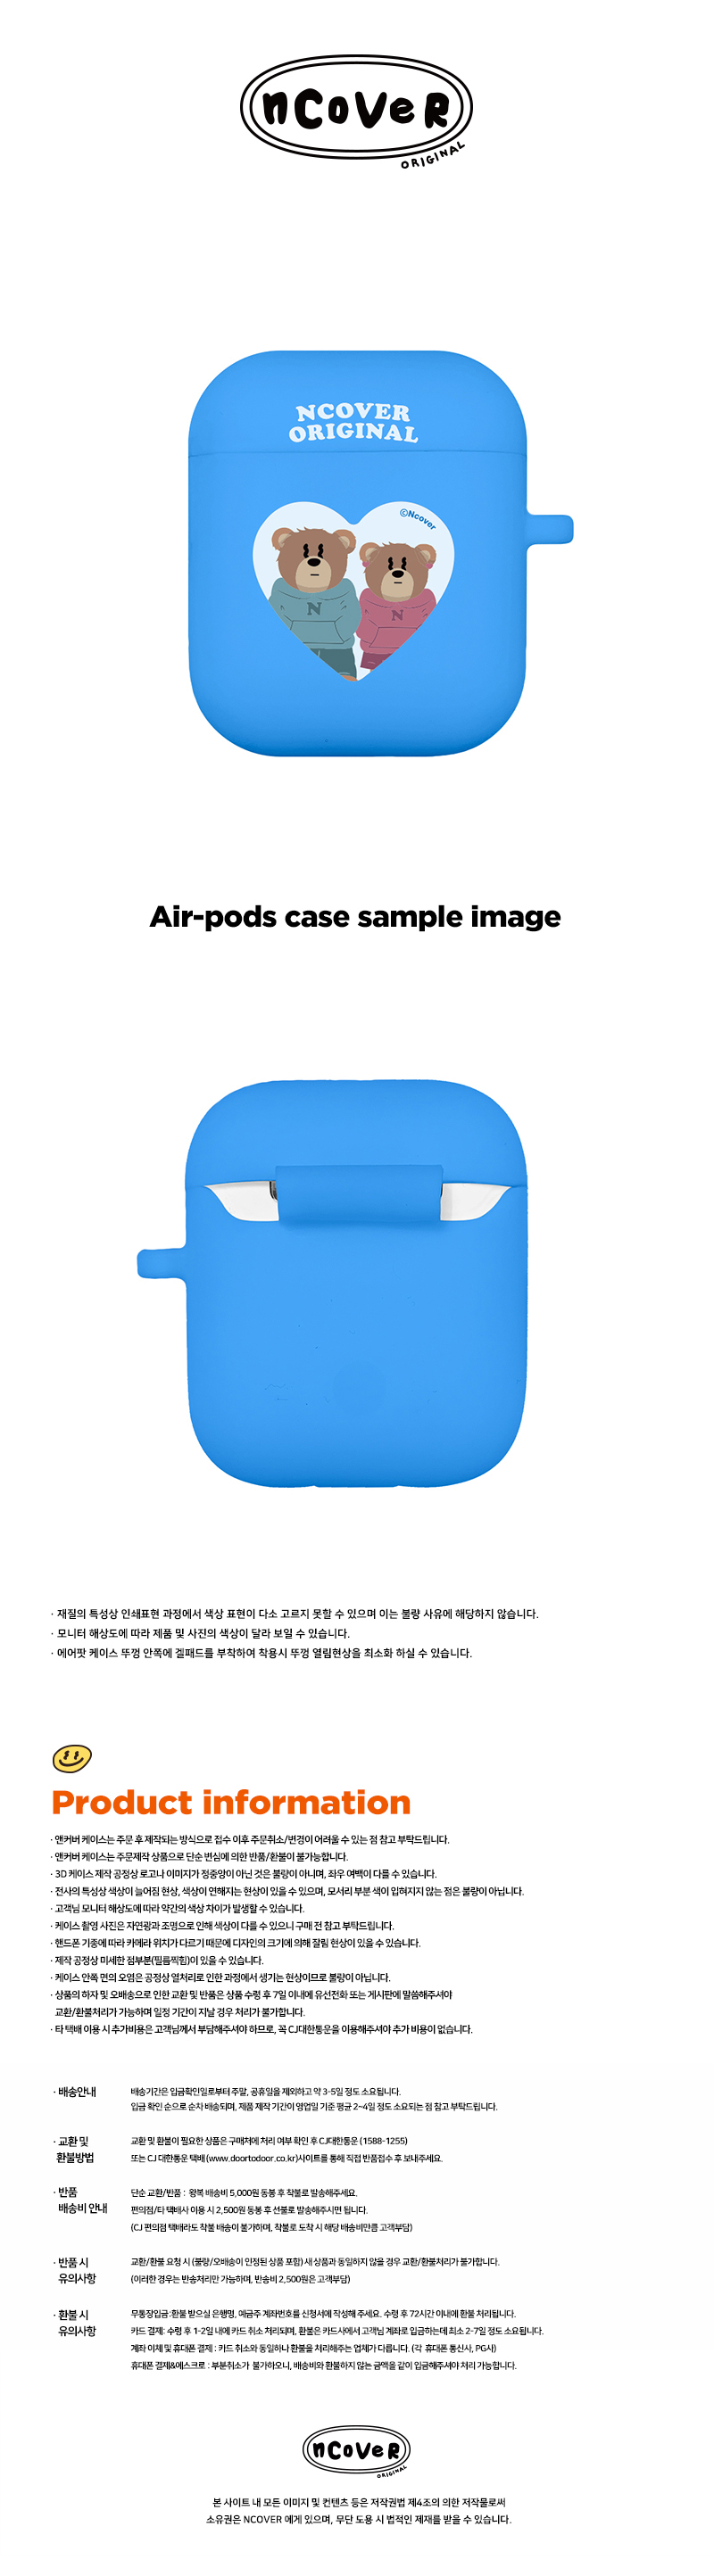 [호환용] Couple hoodie bruin-blue(airpods jelly)  15,000원 - 바이인터내셔널주식회사 디지털, 이어폰/헤드폰, 이어폰/헤드폰 액세서리, 에어팟/에어팟프로 케이스 바보사랑 [호환용] Couple hoodie bruin-blue(airpods jelly)  15,000원 - 바이인터내셔널주식회사 디지털, 이어폰/헤드폰, 이어폰/헤드폰 액세서리, 에어팟/에어팟프로 케이스 바보사랑